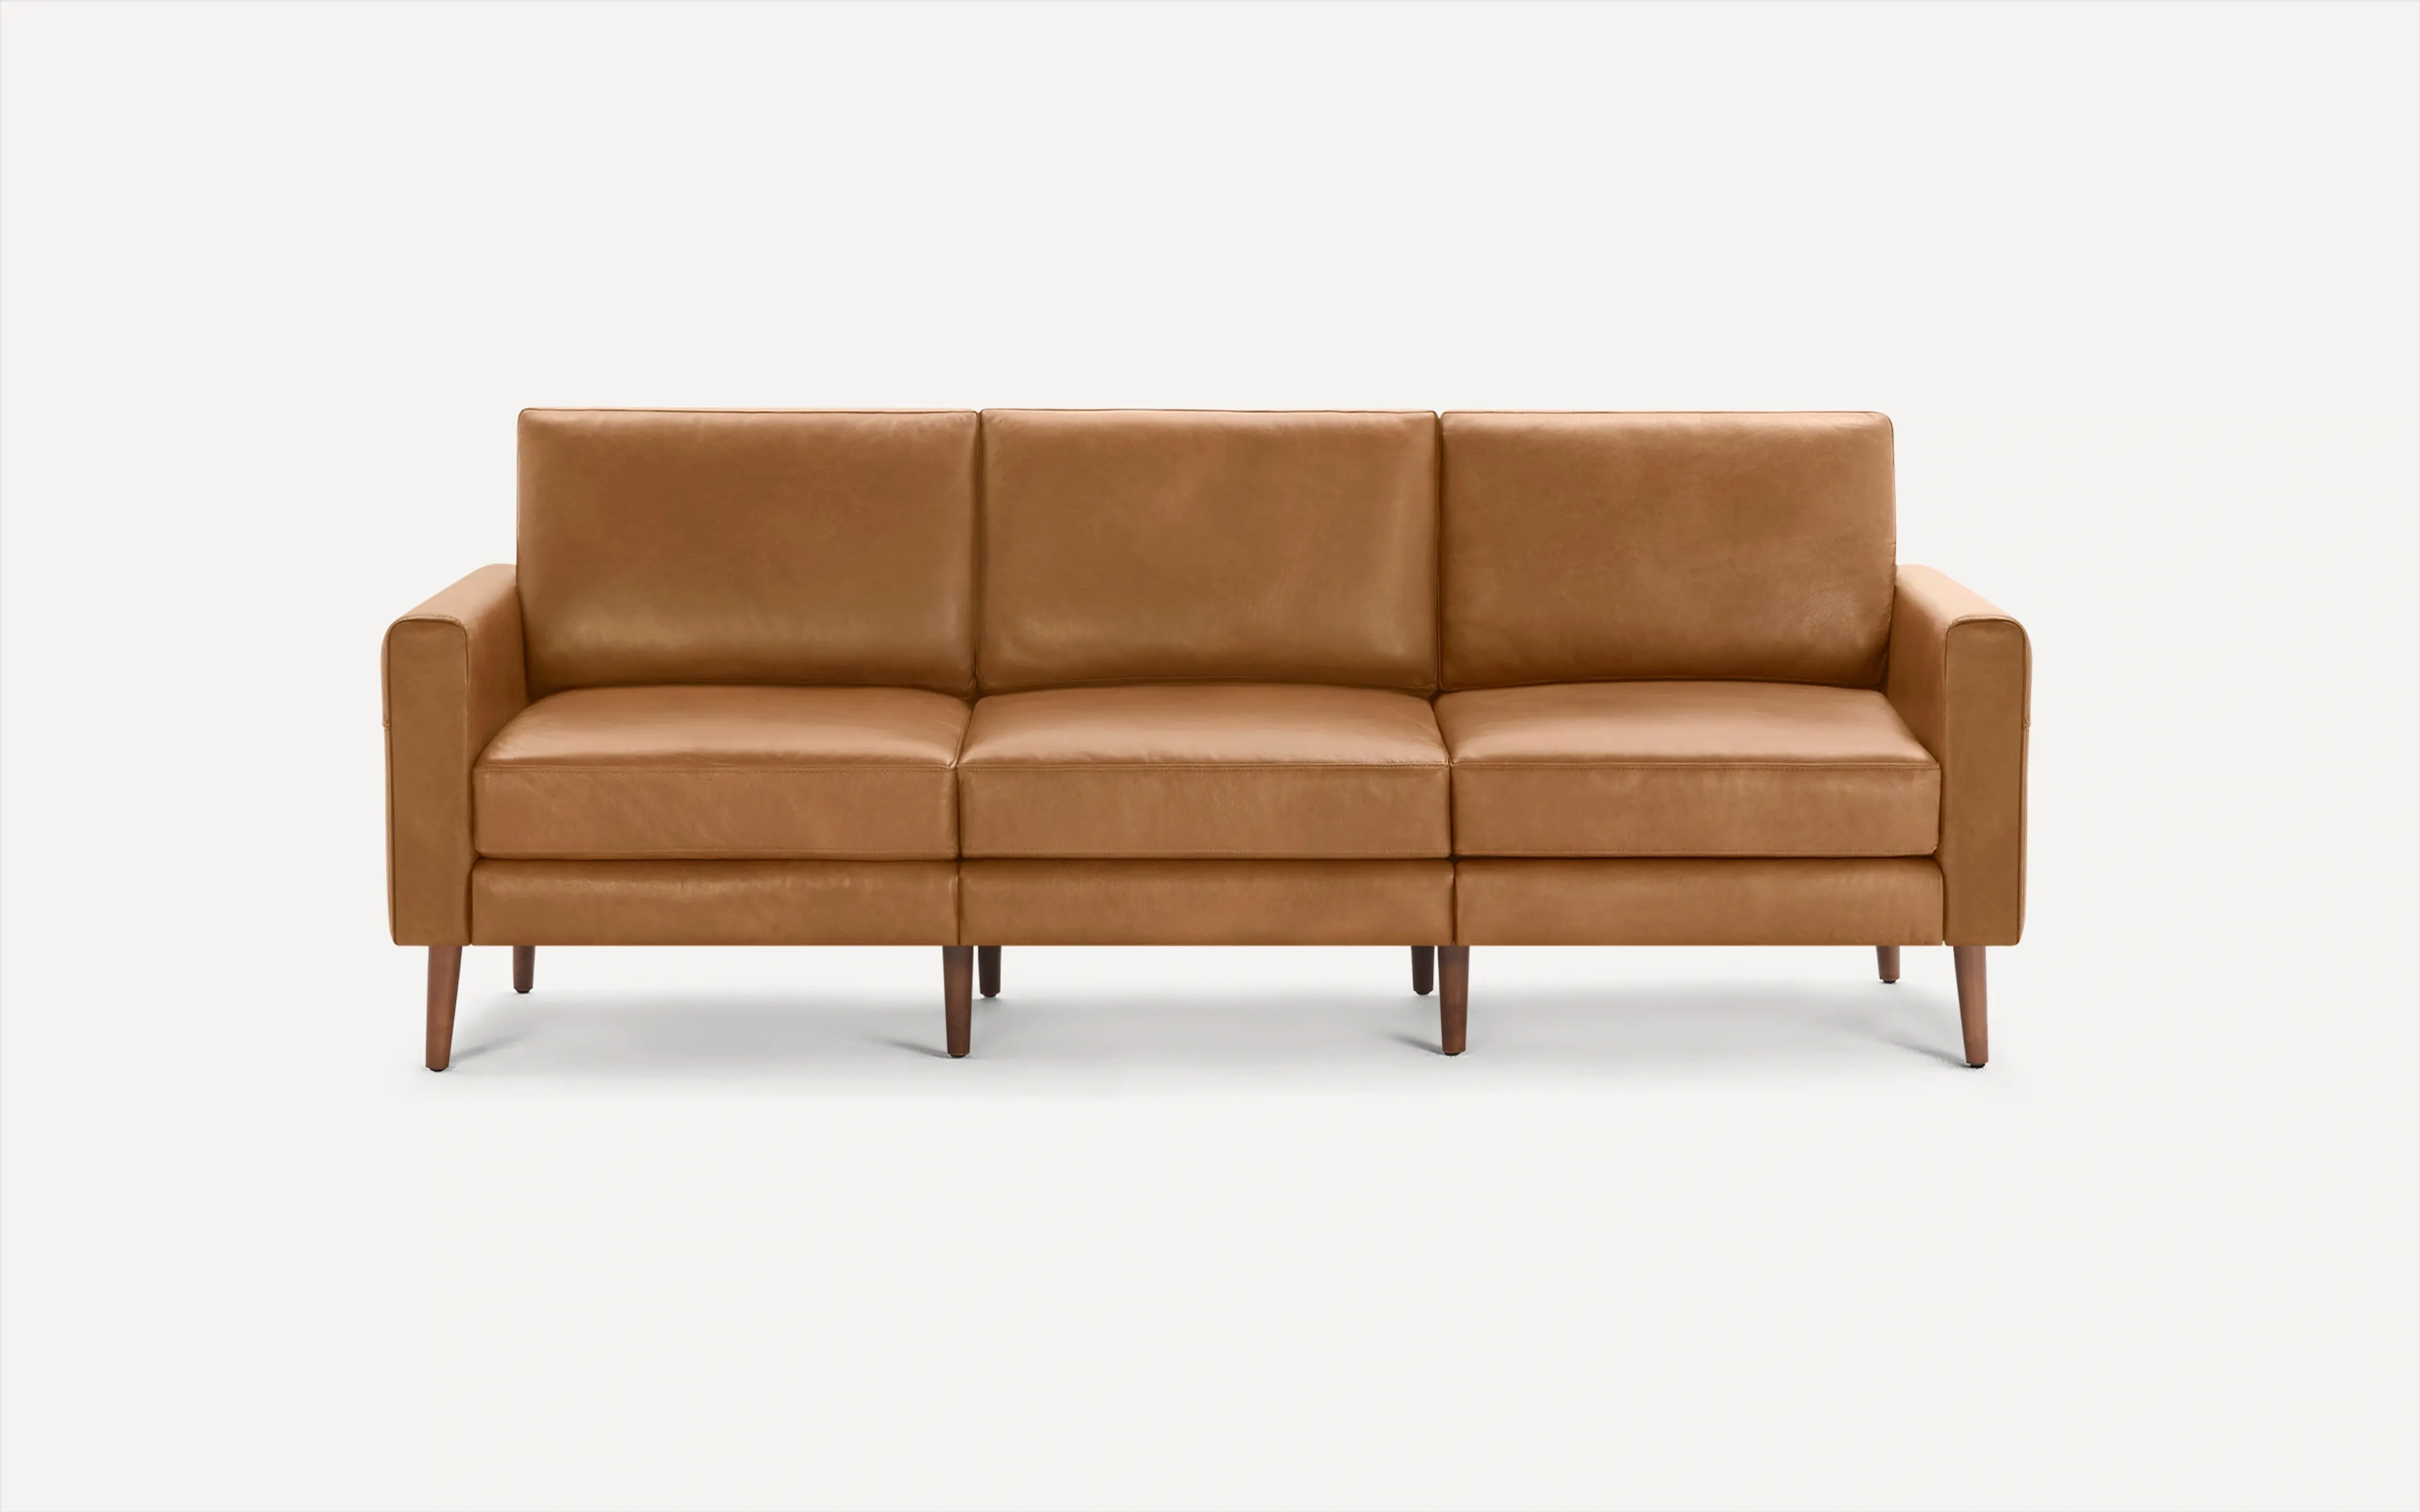 Original Nomad Sofa in Camel Leather